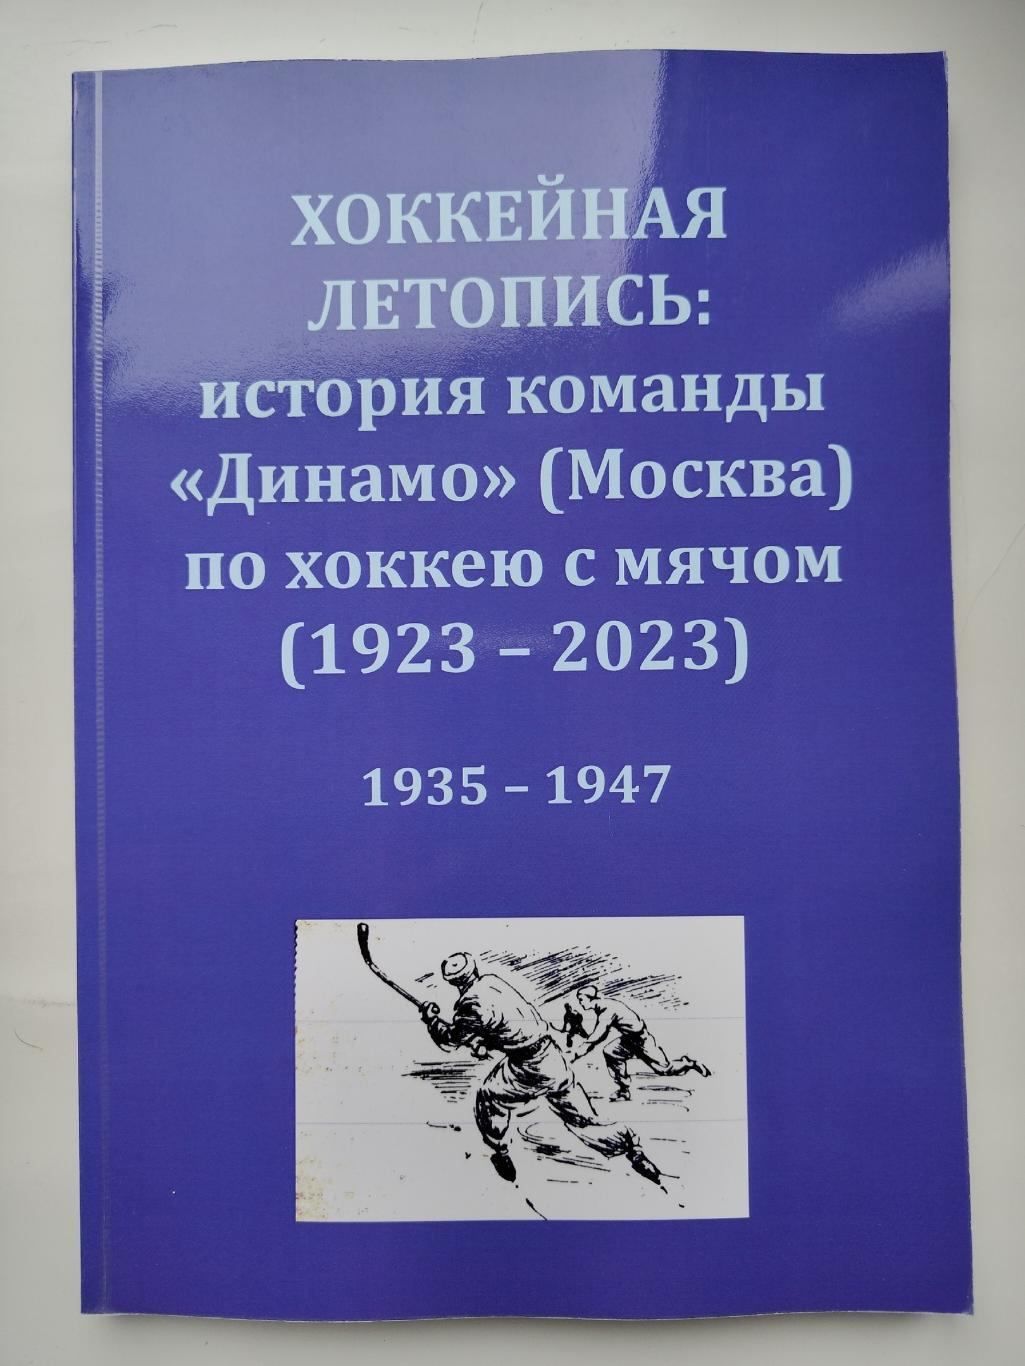 Хоккей с мячом. Хоккейная летопись: история команды Динамо Москва 1935-1947